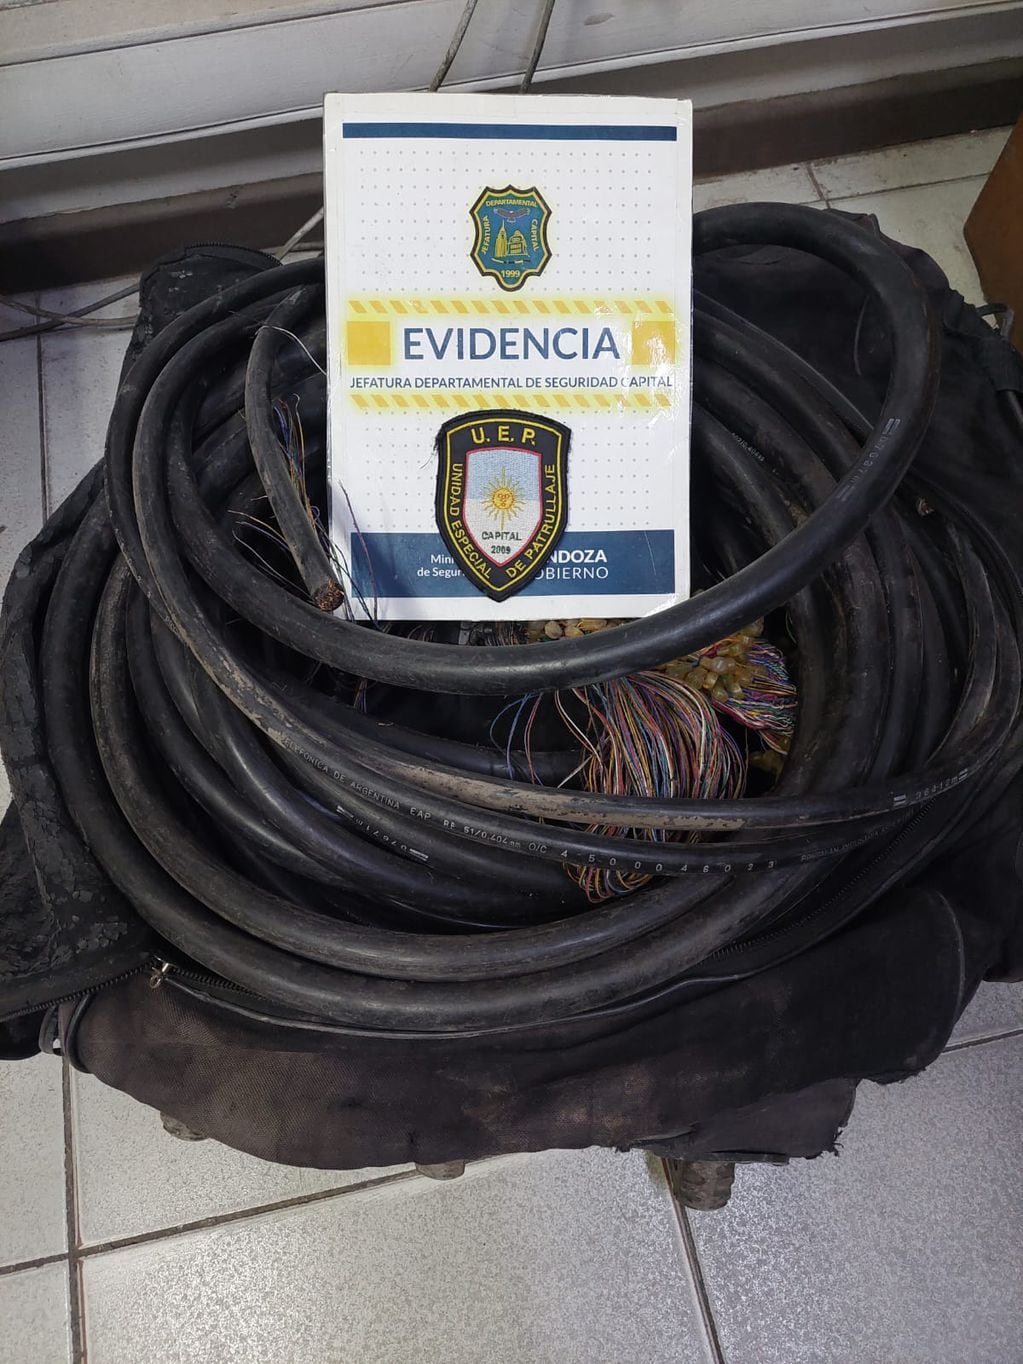 Lo encontraron con cables, no pudo justificar el origen y lo detuvieron. Foto Ministerio de Seguridad.